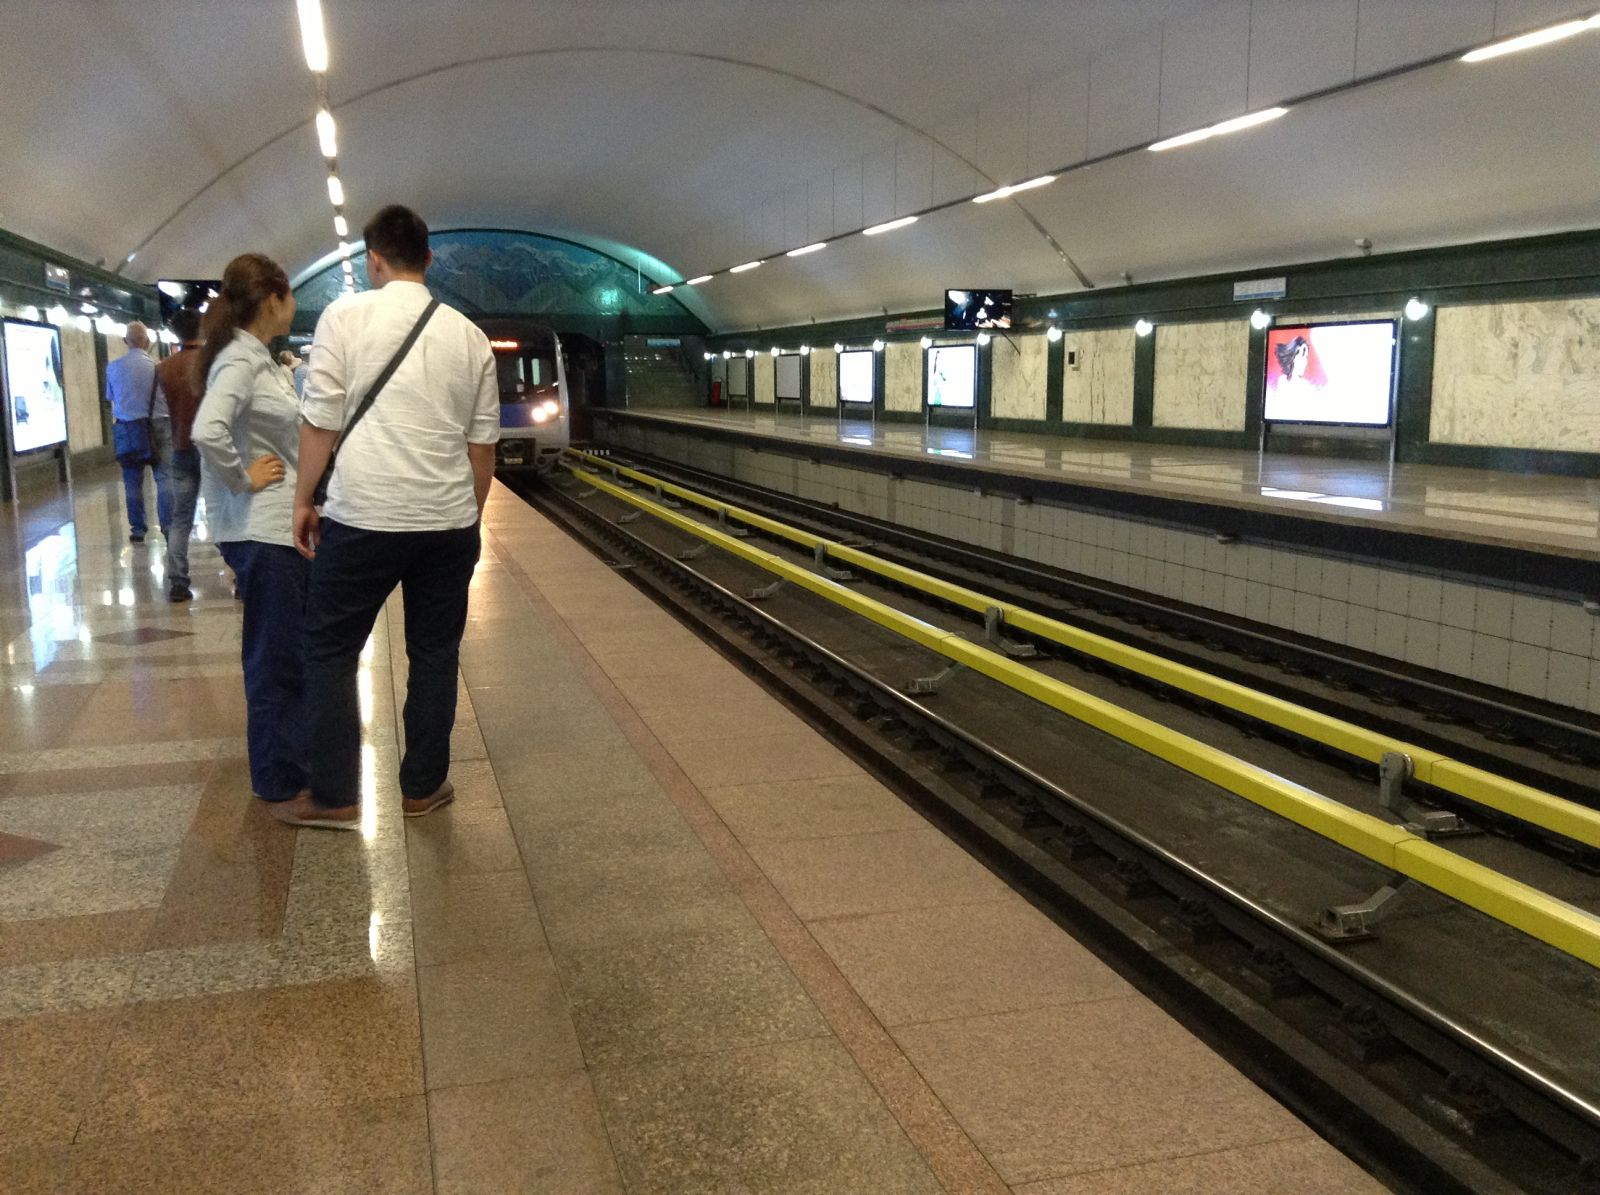 Метро Алматы. Длина линий - 7,6 км. Количество станций - 7, все в центре города.